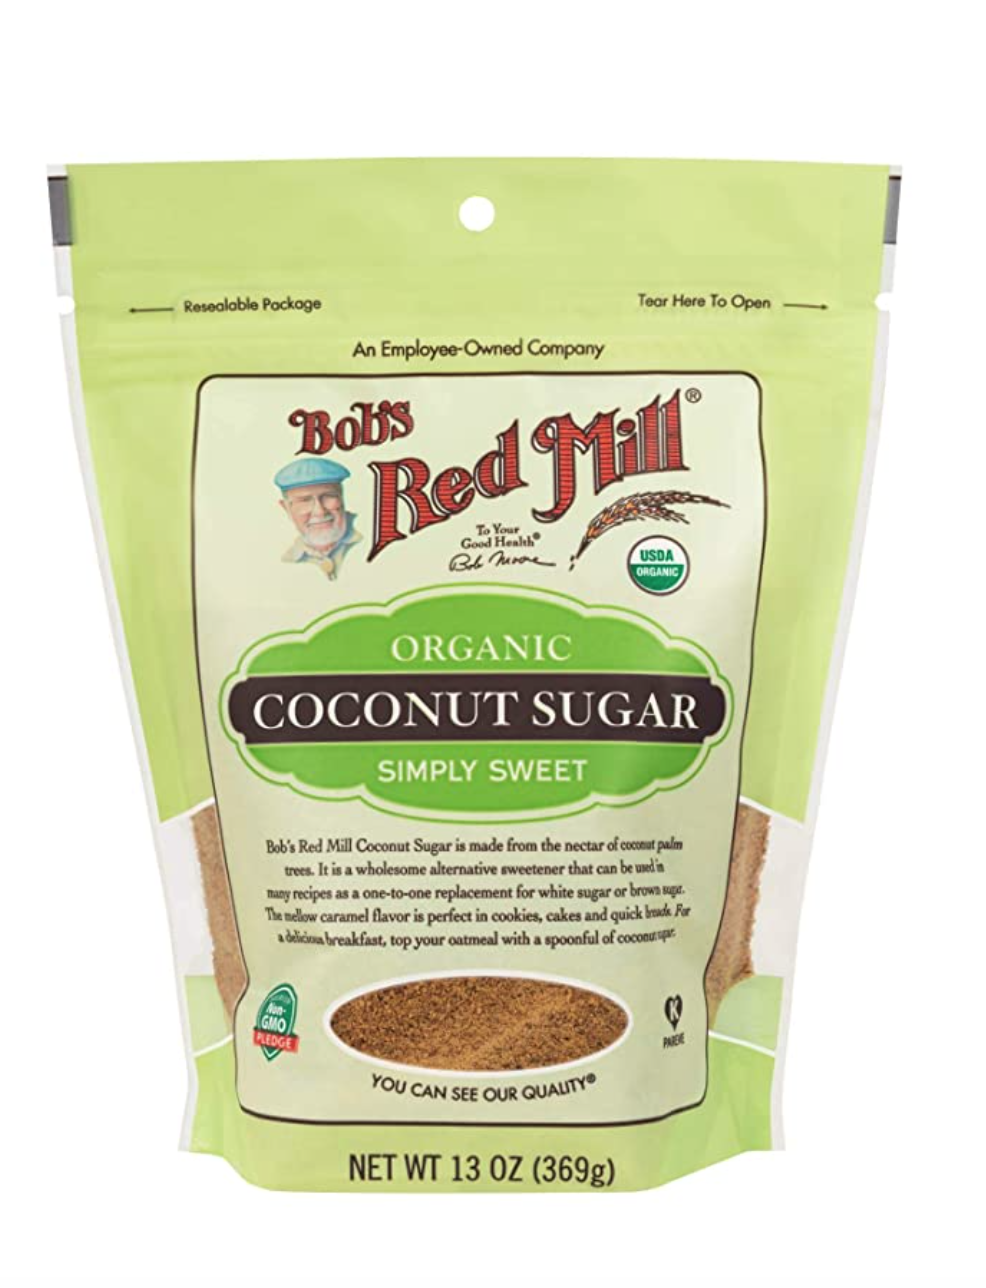 Bob's Red Mill Coconut Sugar amazon